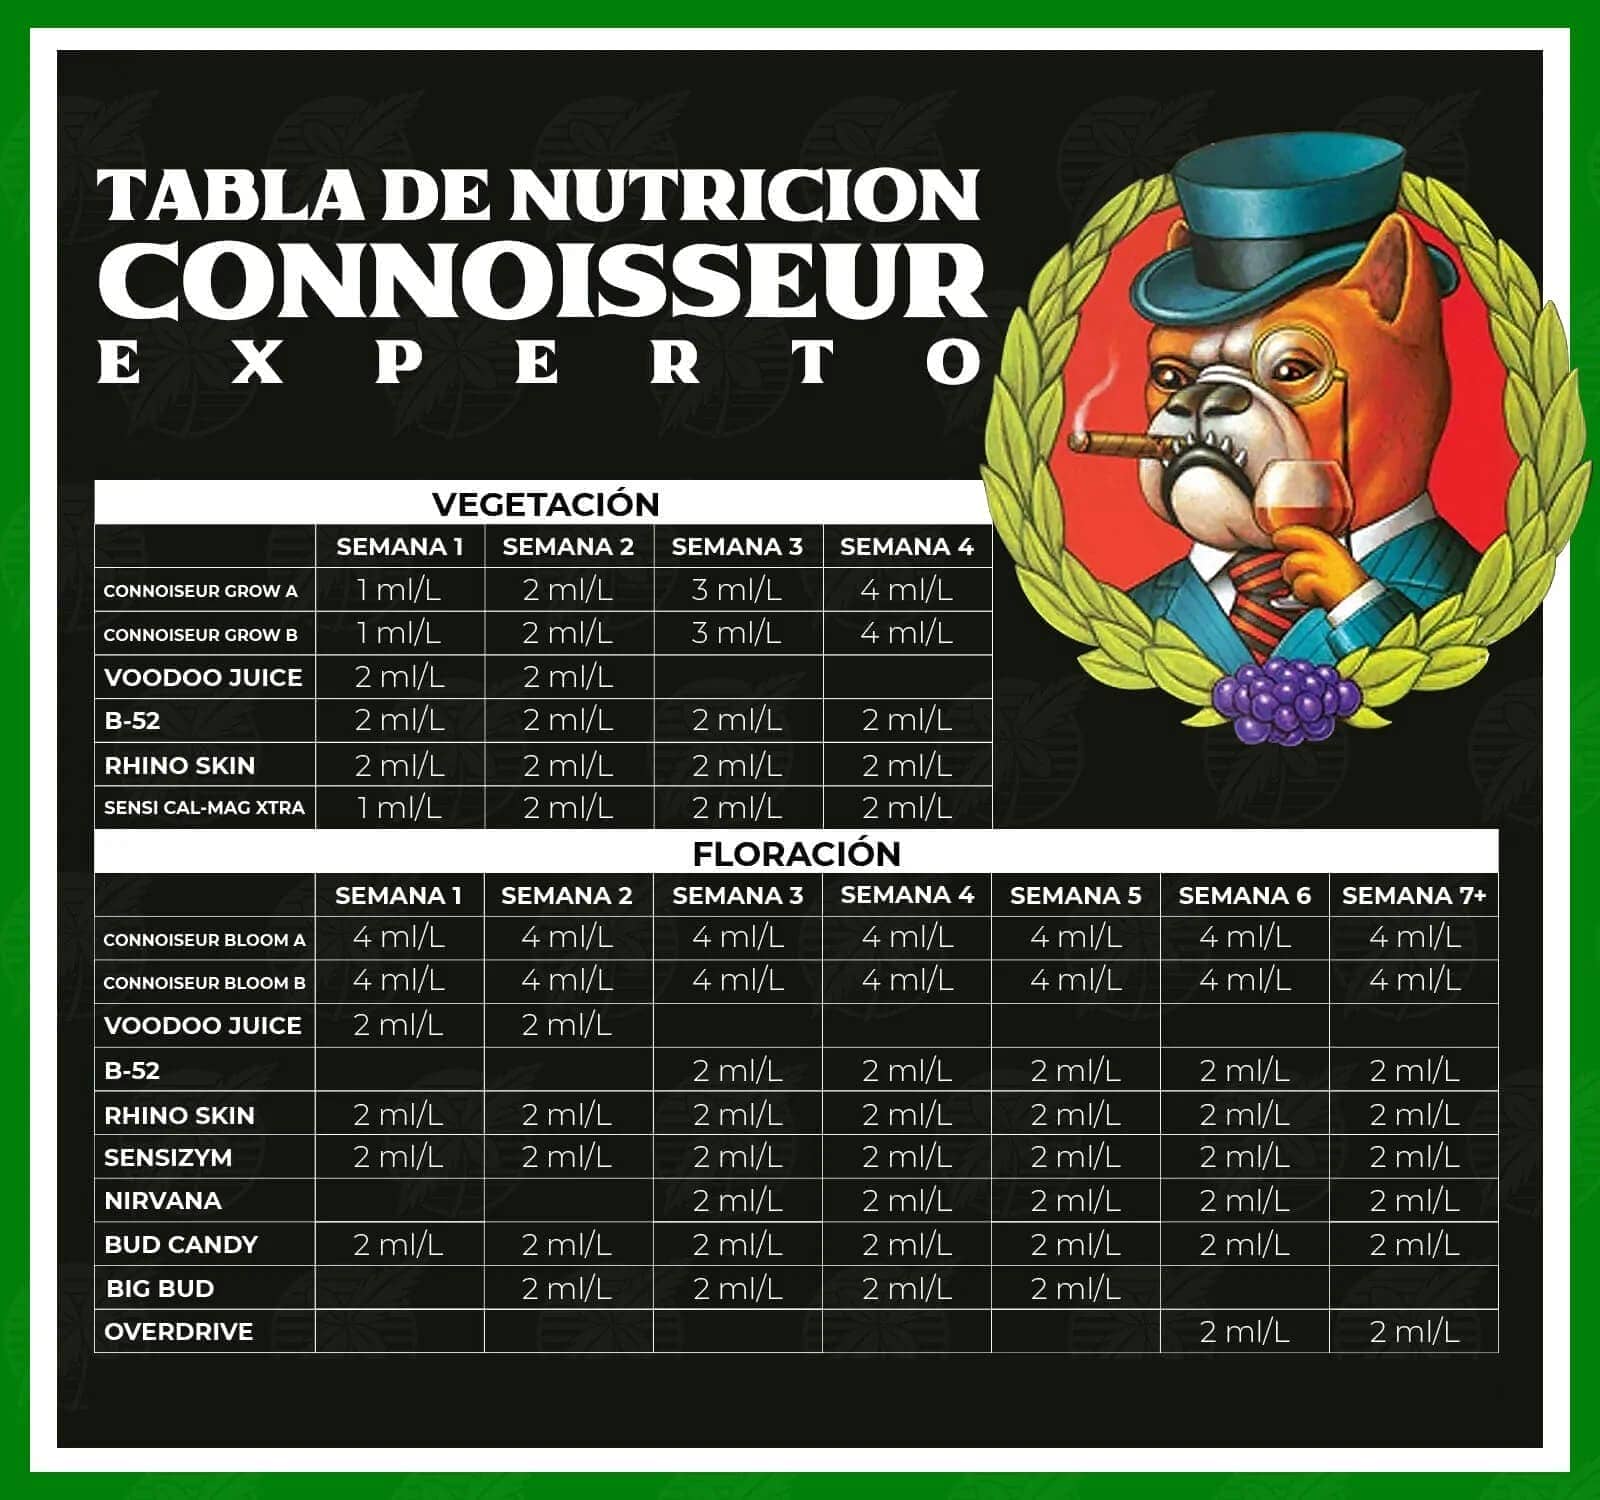 Tabla Advanced Nutrients con la base de Connoiseur Grow & Bloom AB, nivel Experto